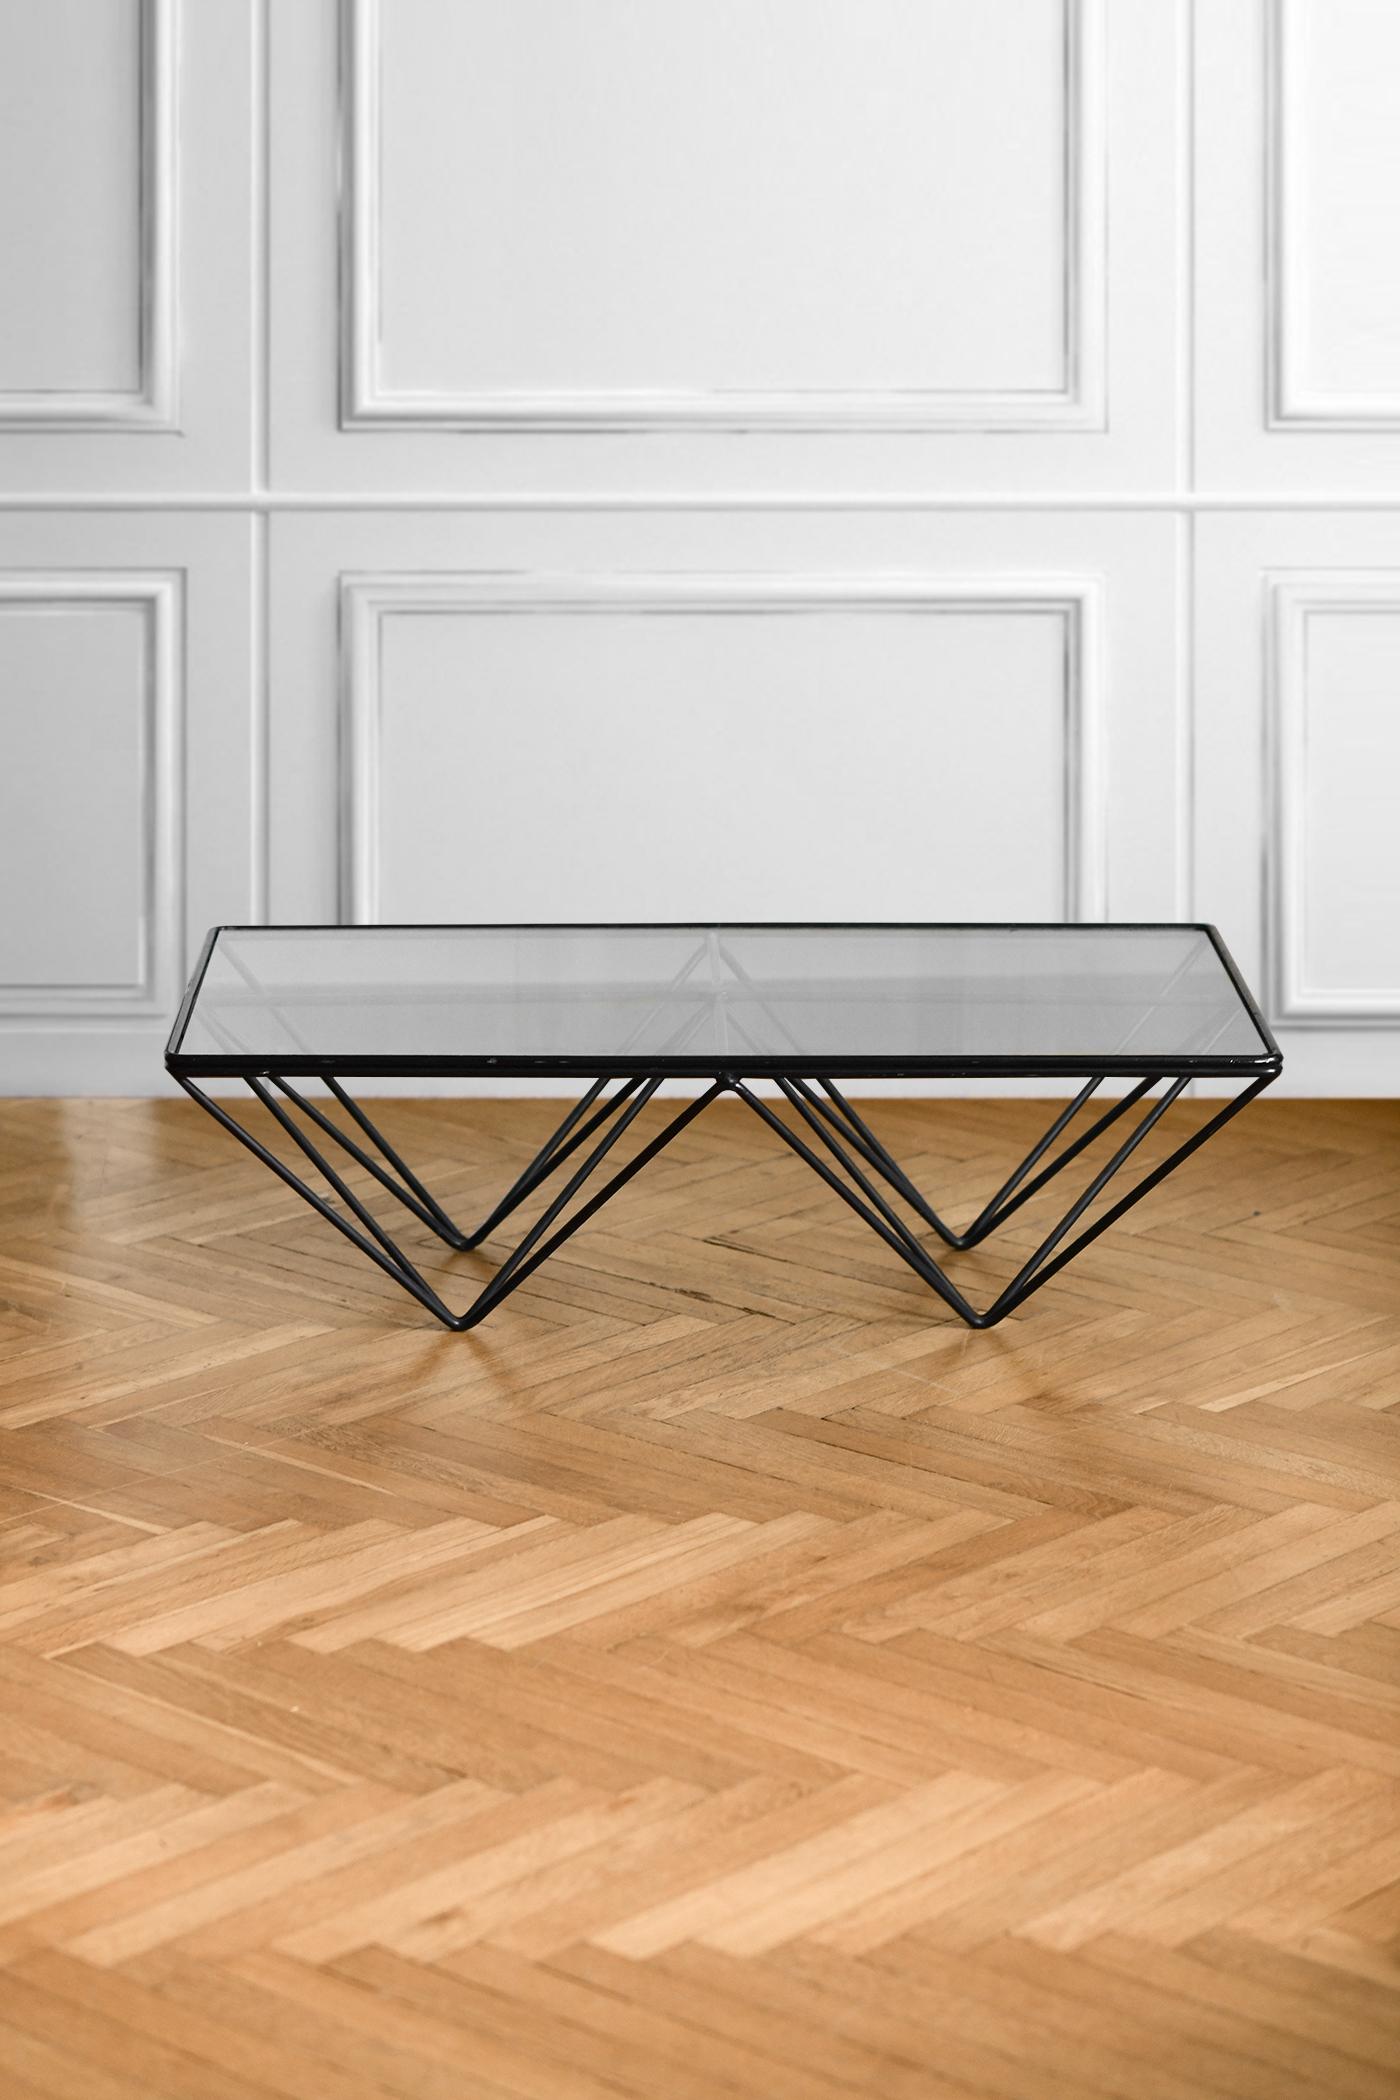 Table basse Alanda par Paolo Piva pour B&B Italia, 1980
Dimensions 120 L x 30,5 H x 60 D cm